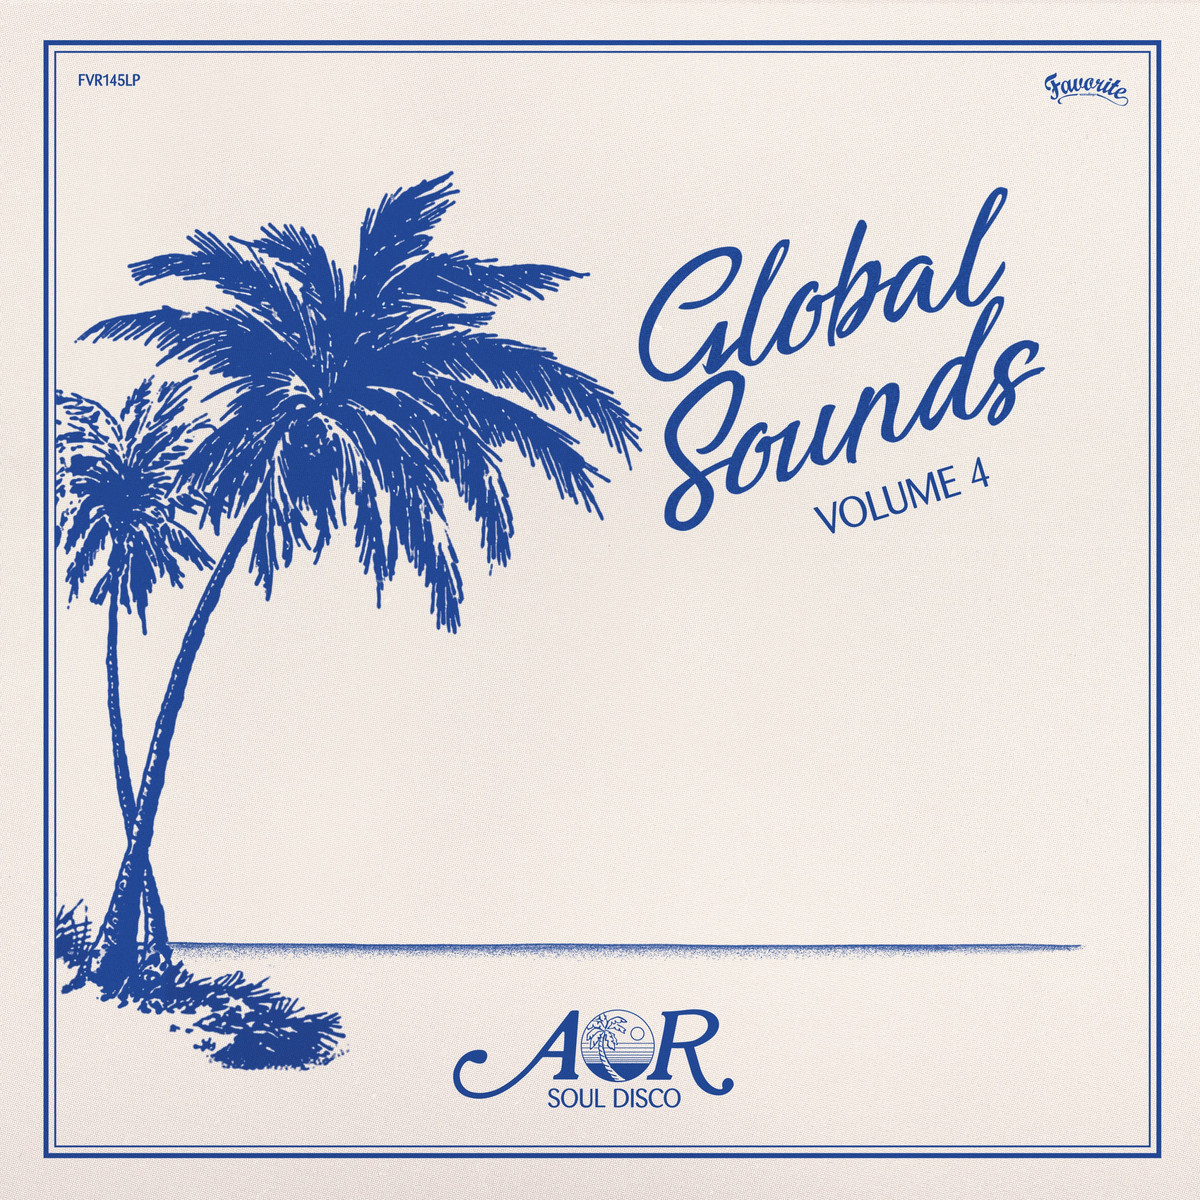 FVR145LPR Various Artists AOR Global Sounds Vol.4 1977 1986